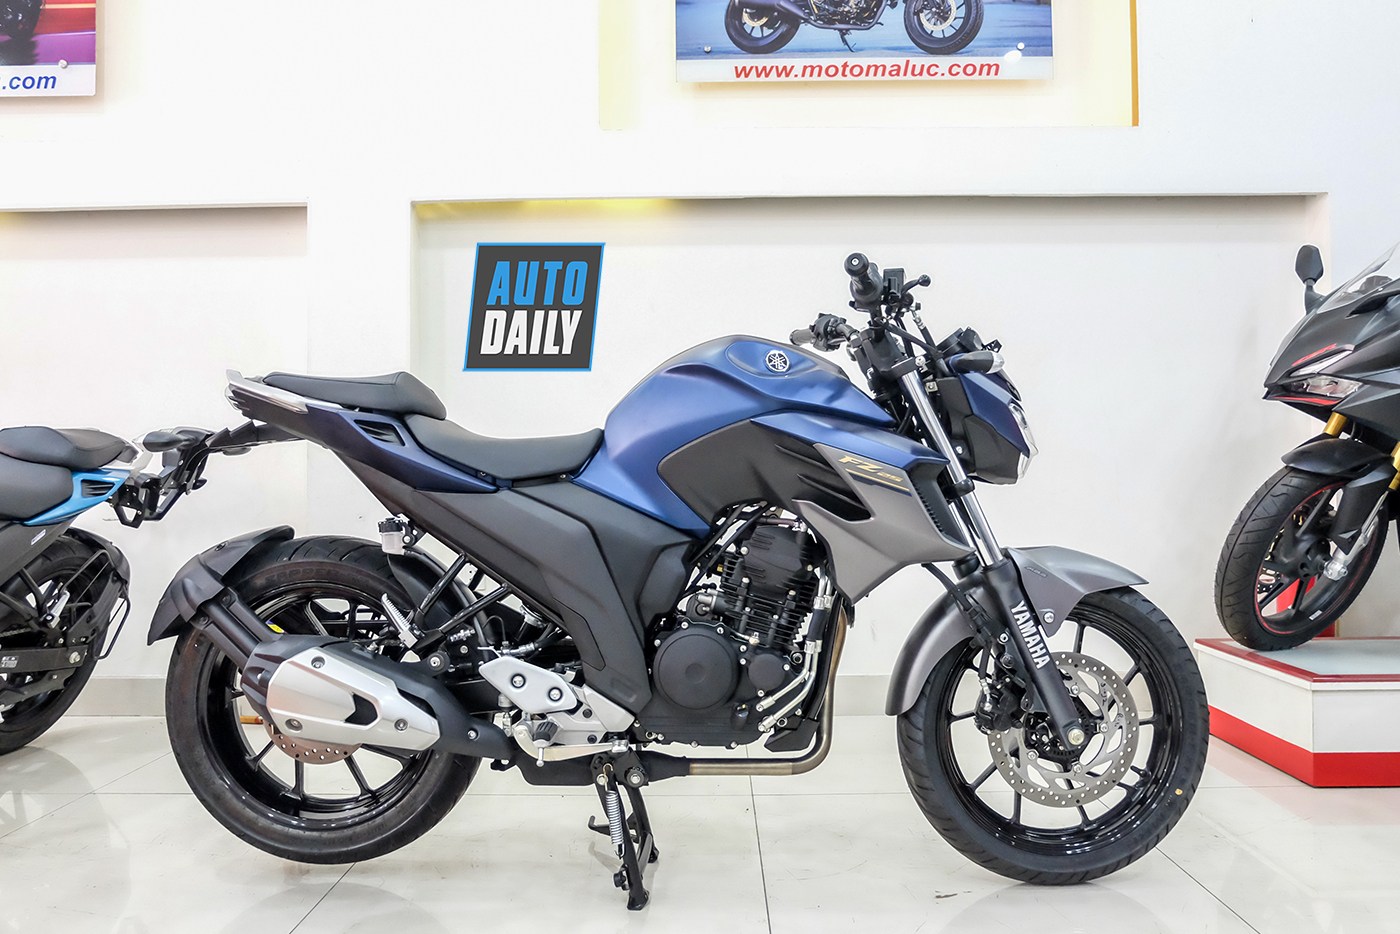  Yamaha FZ 250cc chính chủ  Mua bán xe máy cũ Hà Nội  Facebook